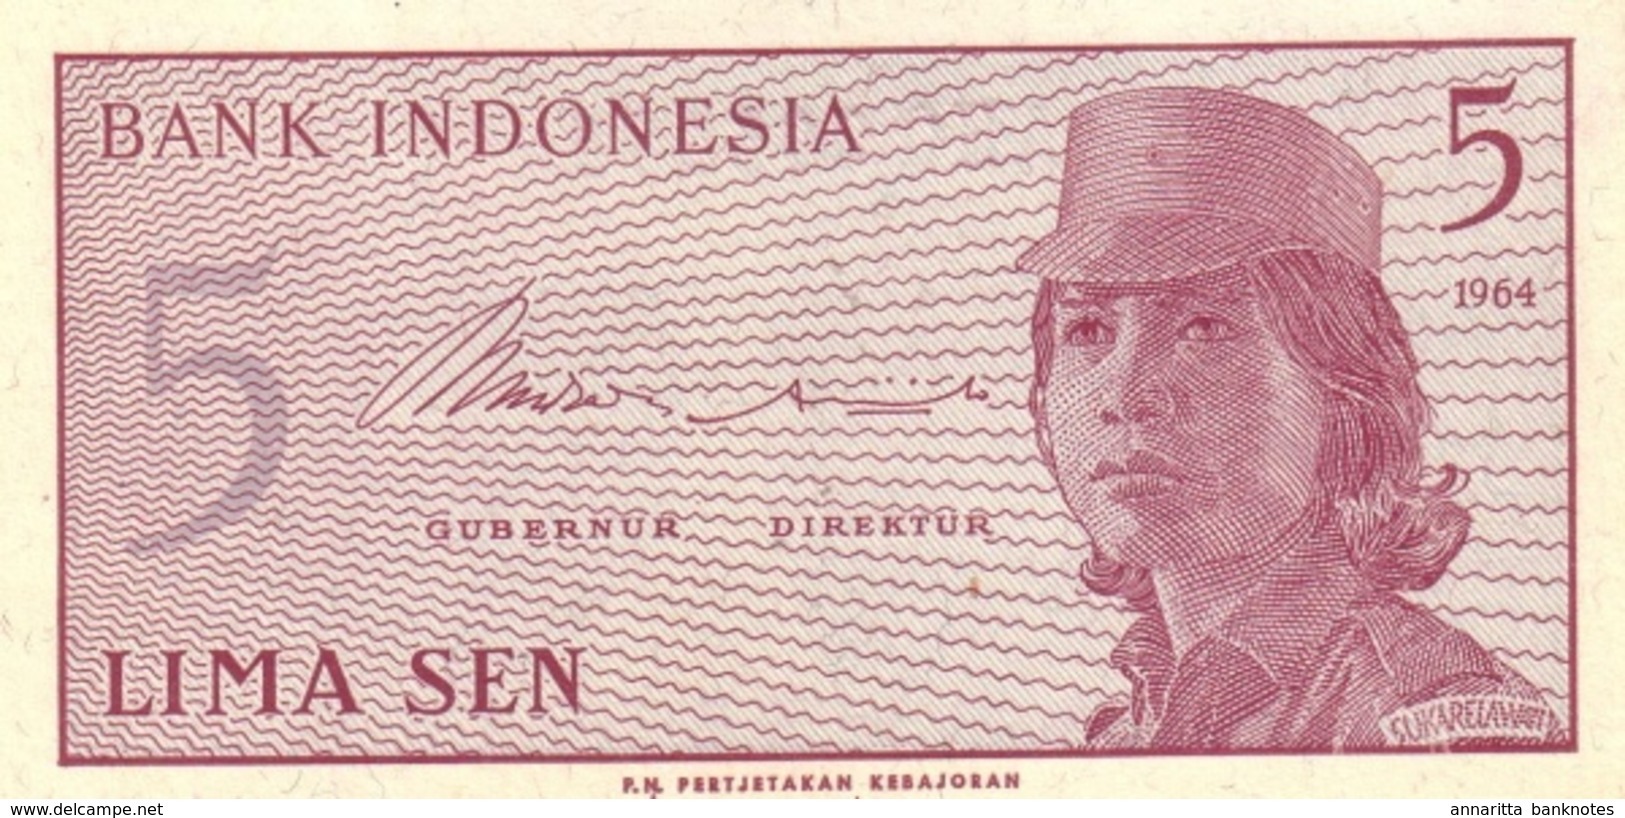 INDONESIA 5 SEN 1964 P-91 UNC  [ID544a] - Indonesië